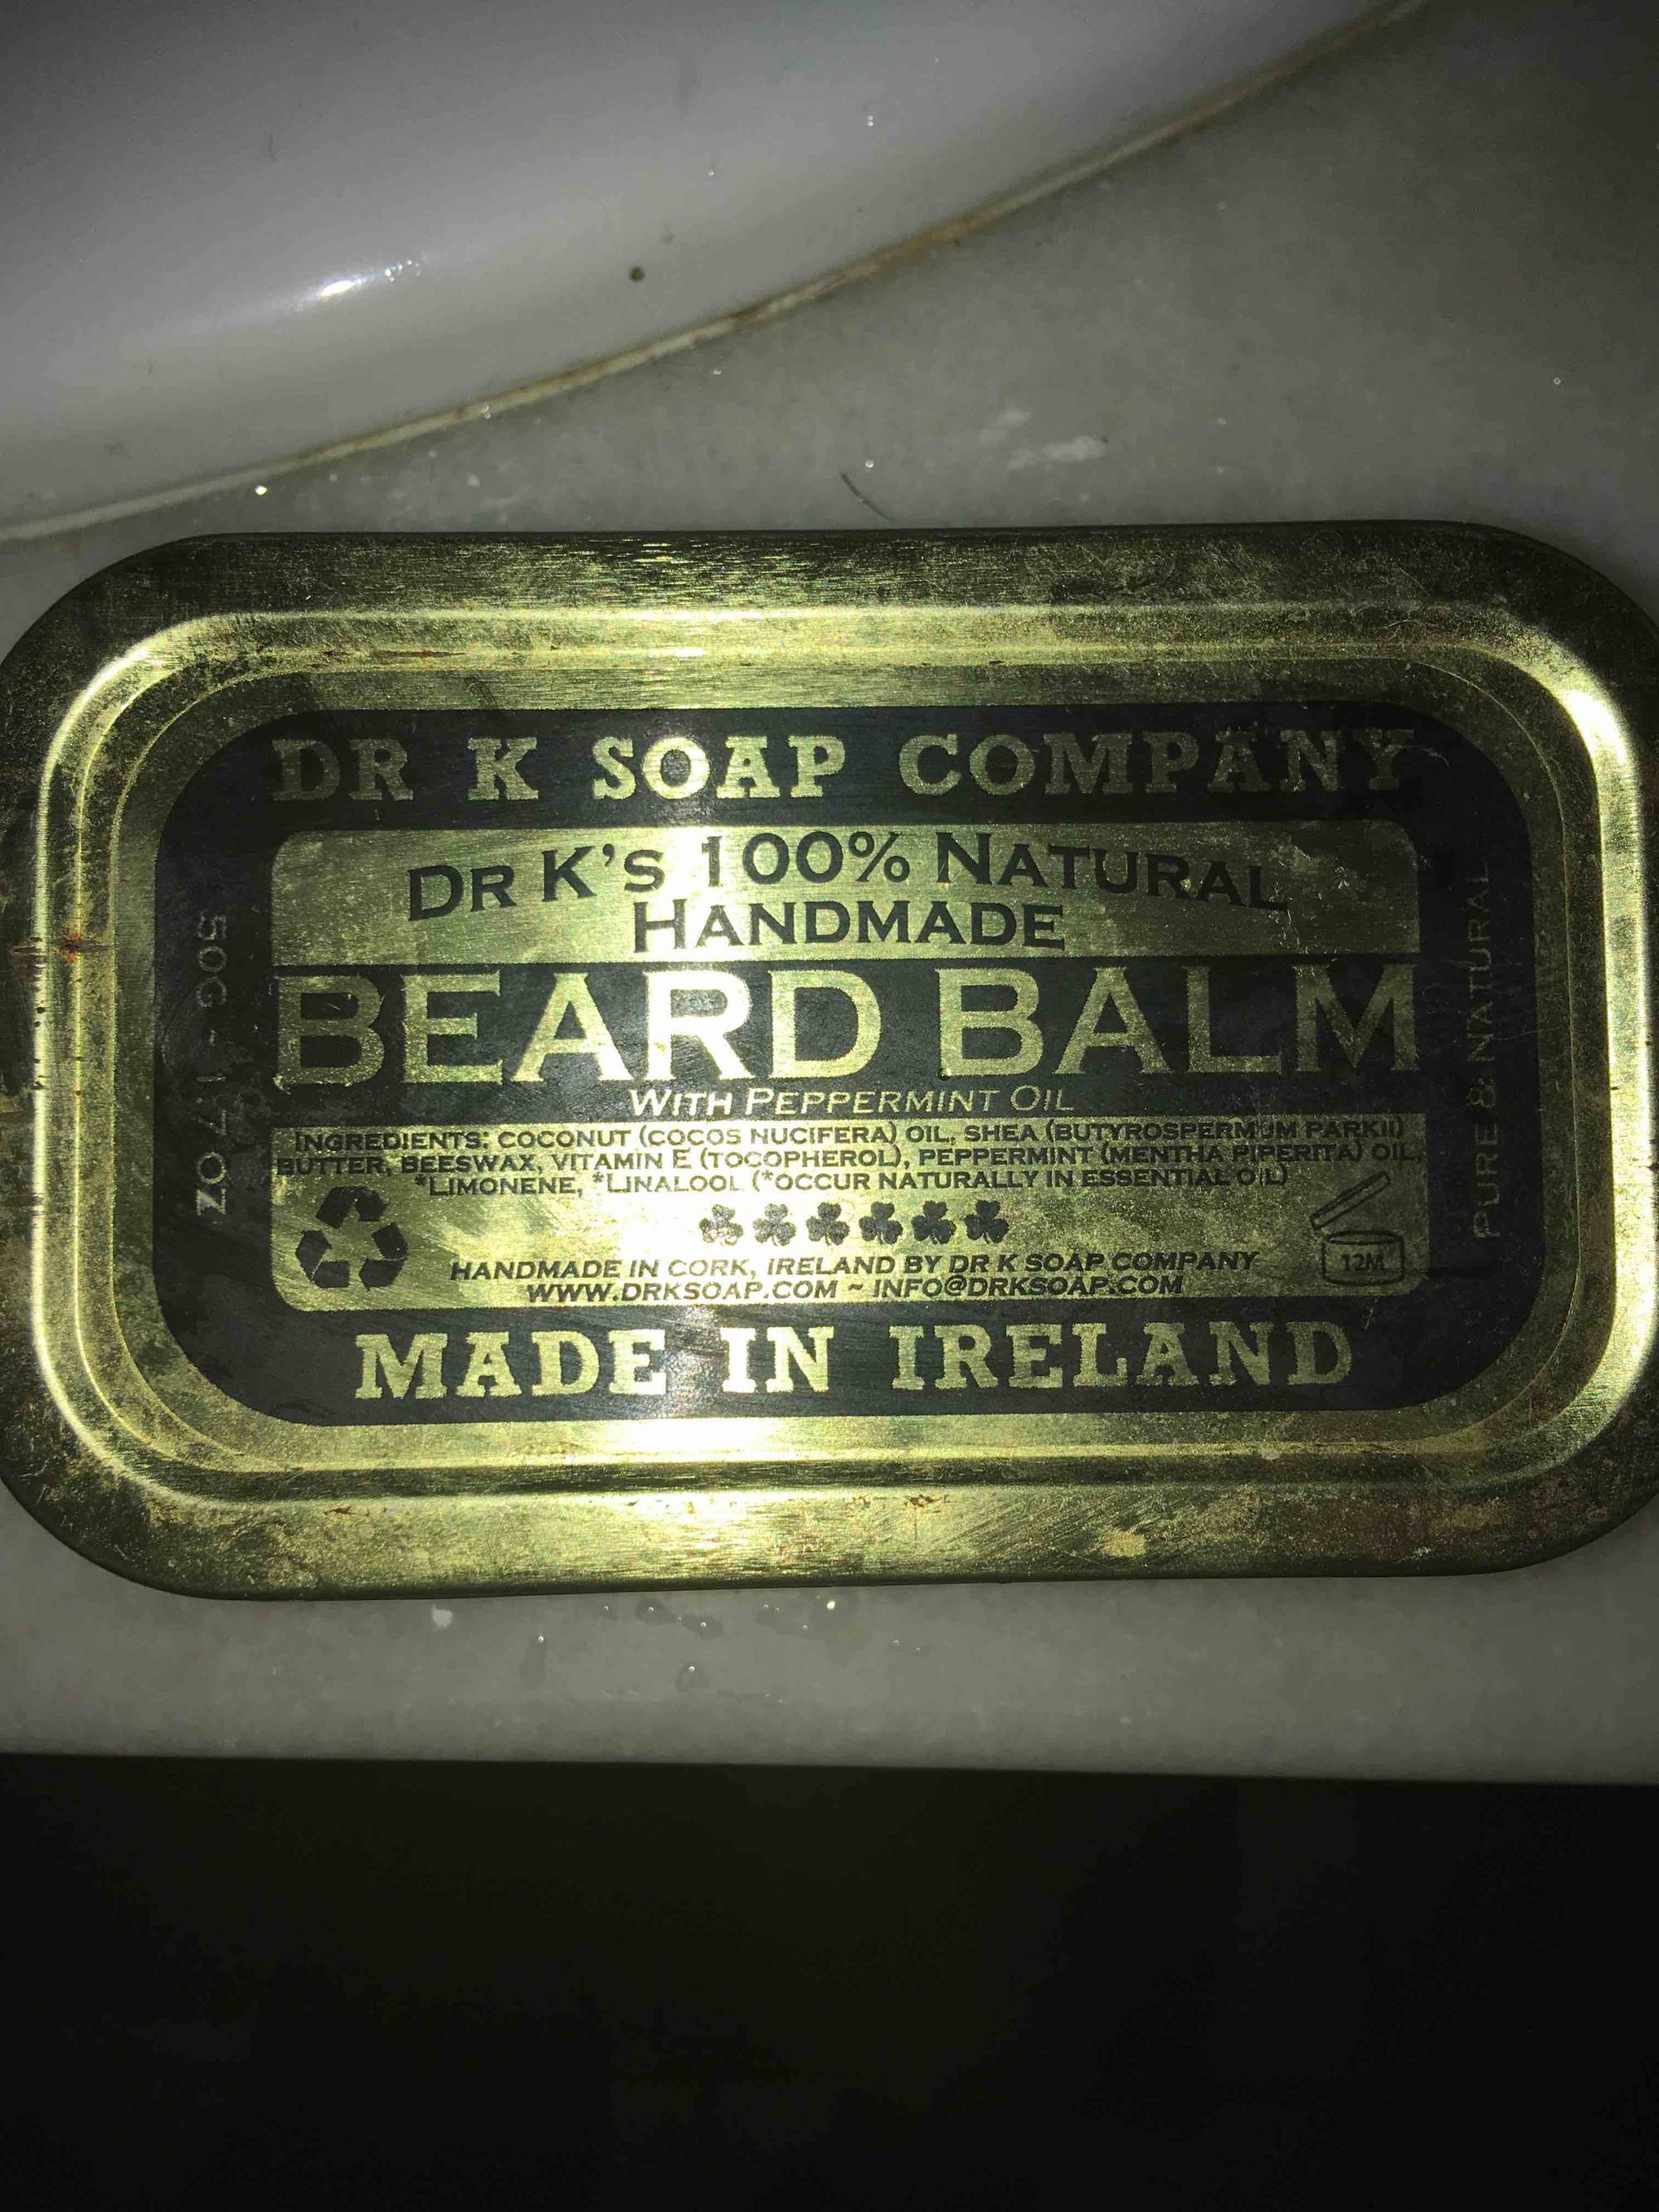 DR K SOAP COMPANY - Beard balm